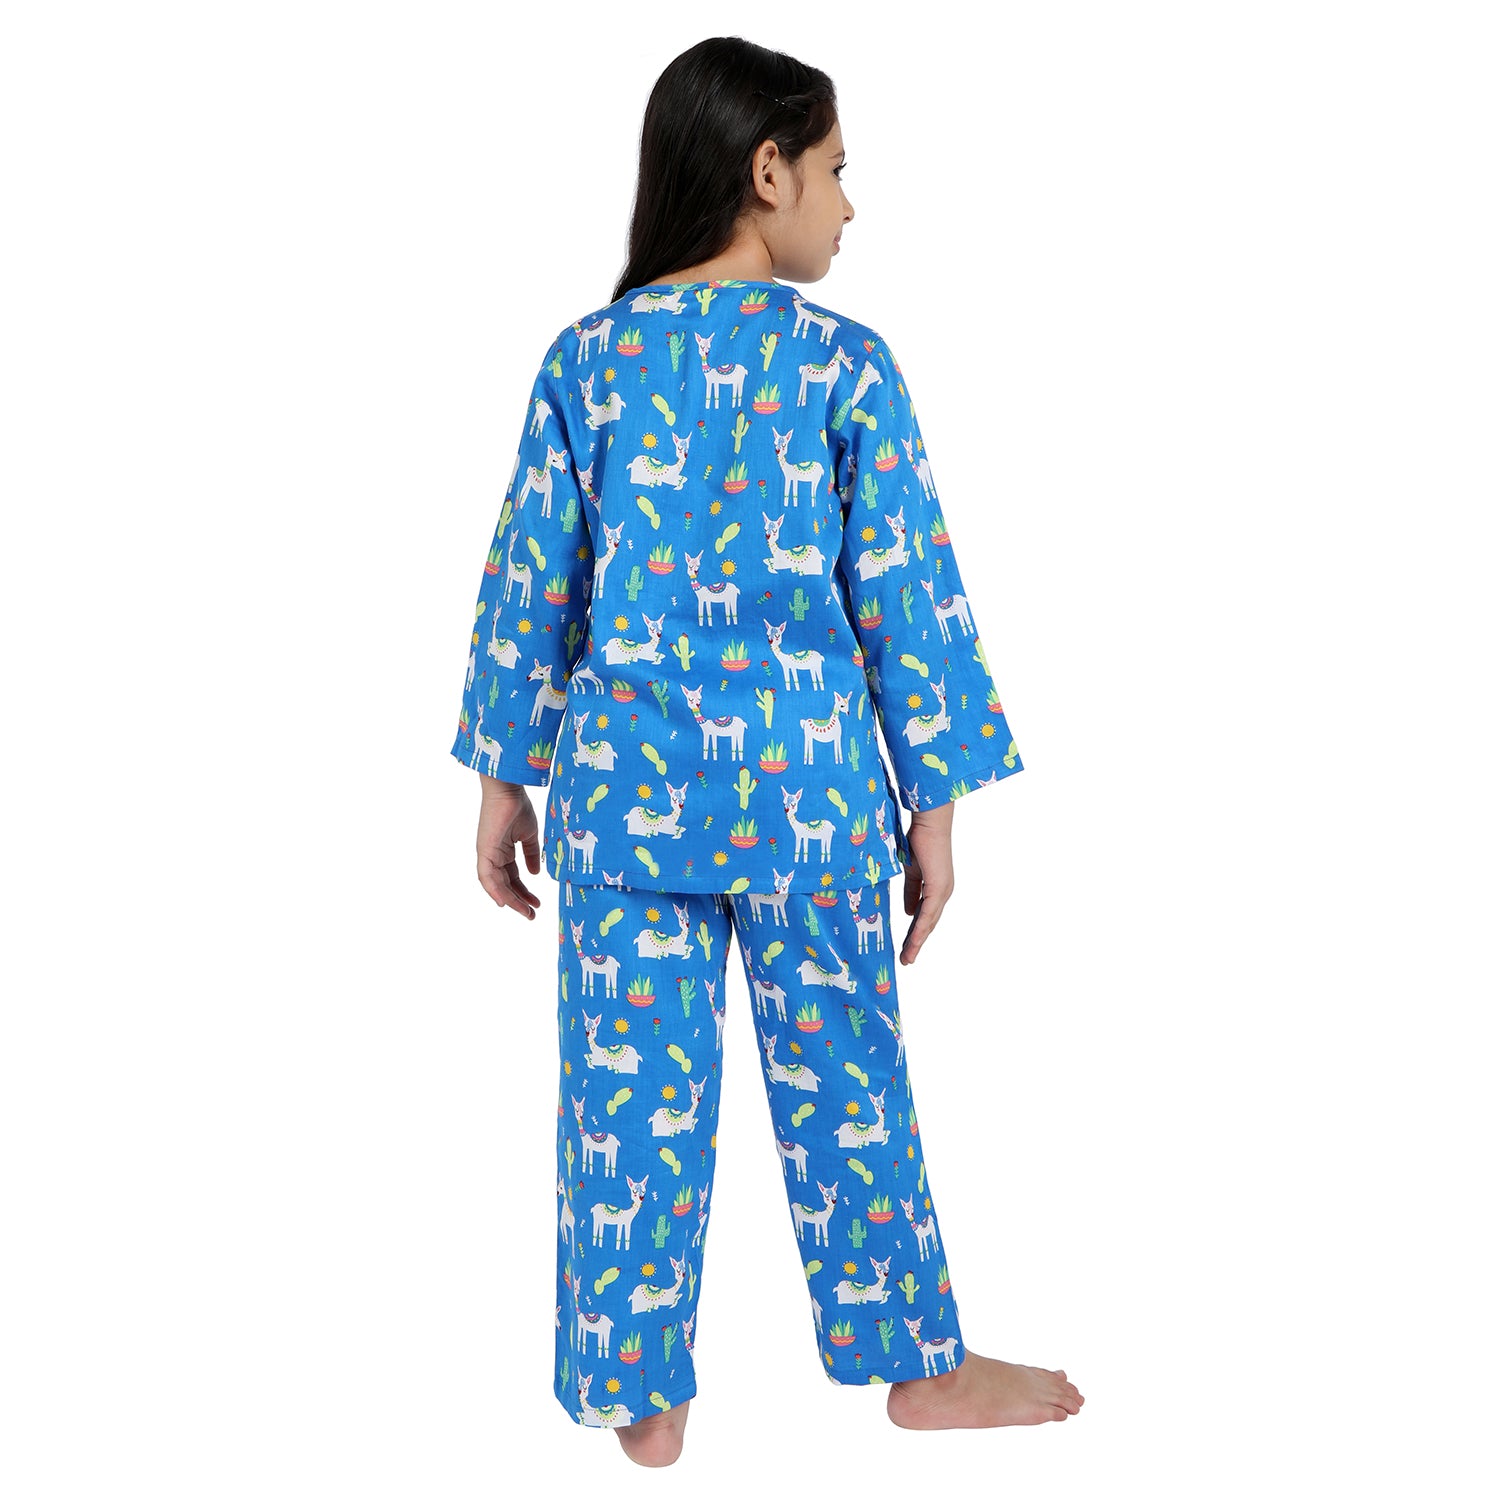 Kid's Pyjama Set - Llama